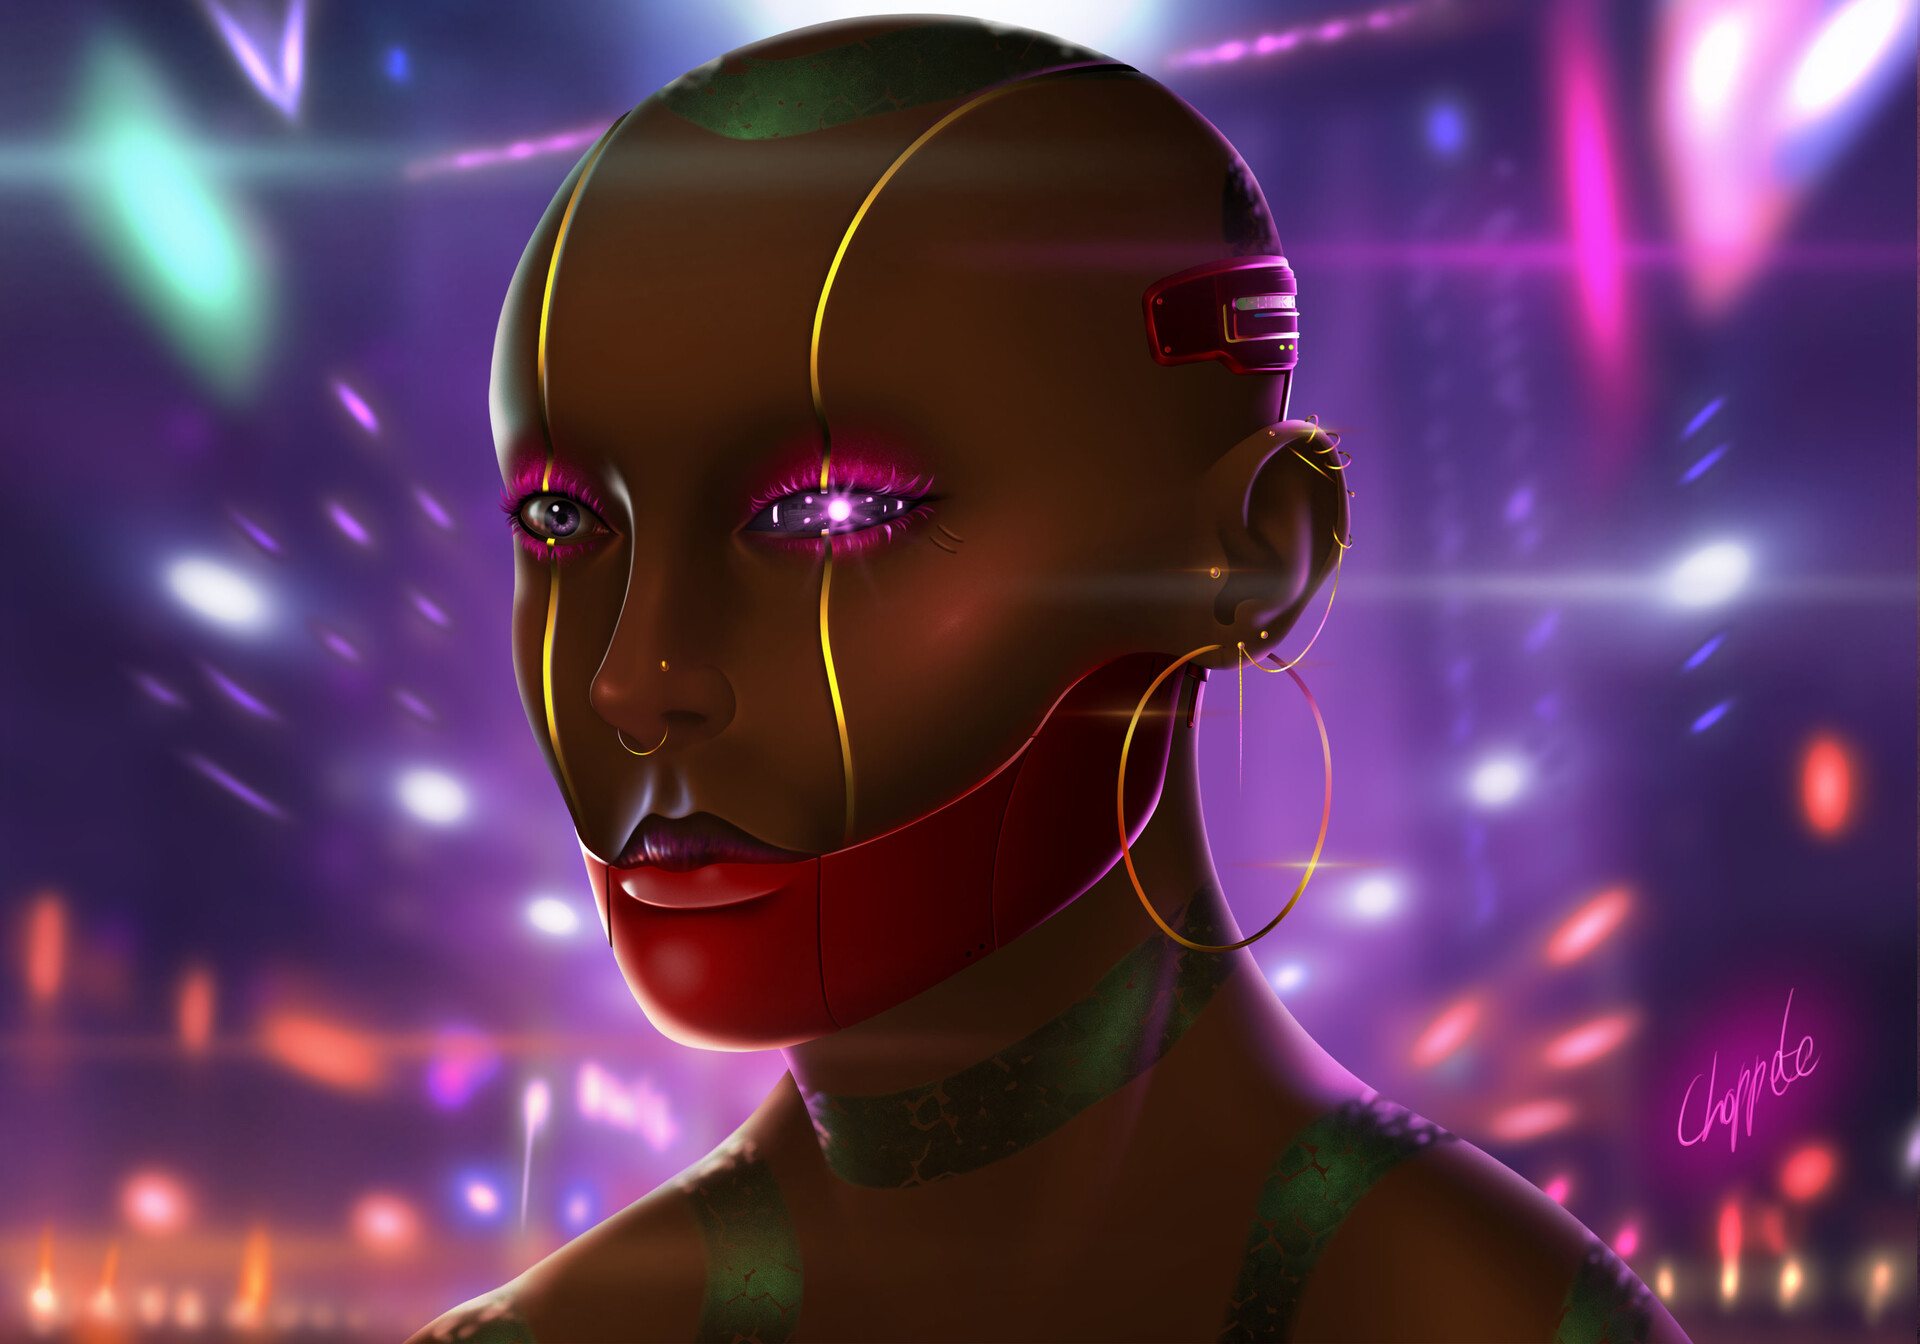 ArtStation - Cyberpunk Woman